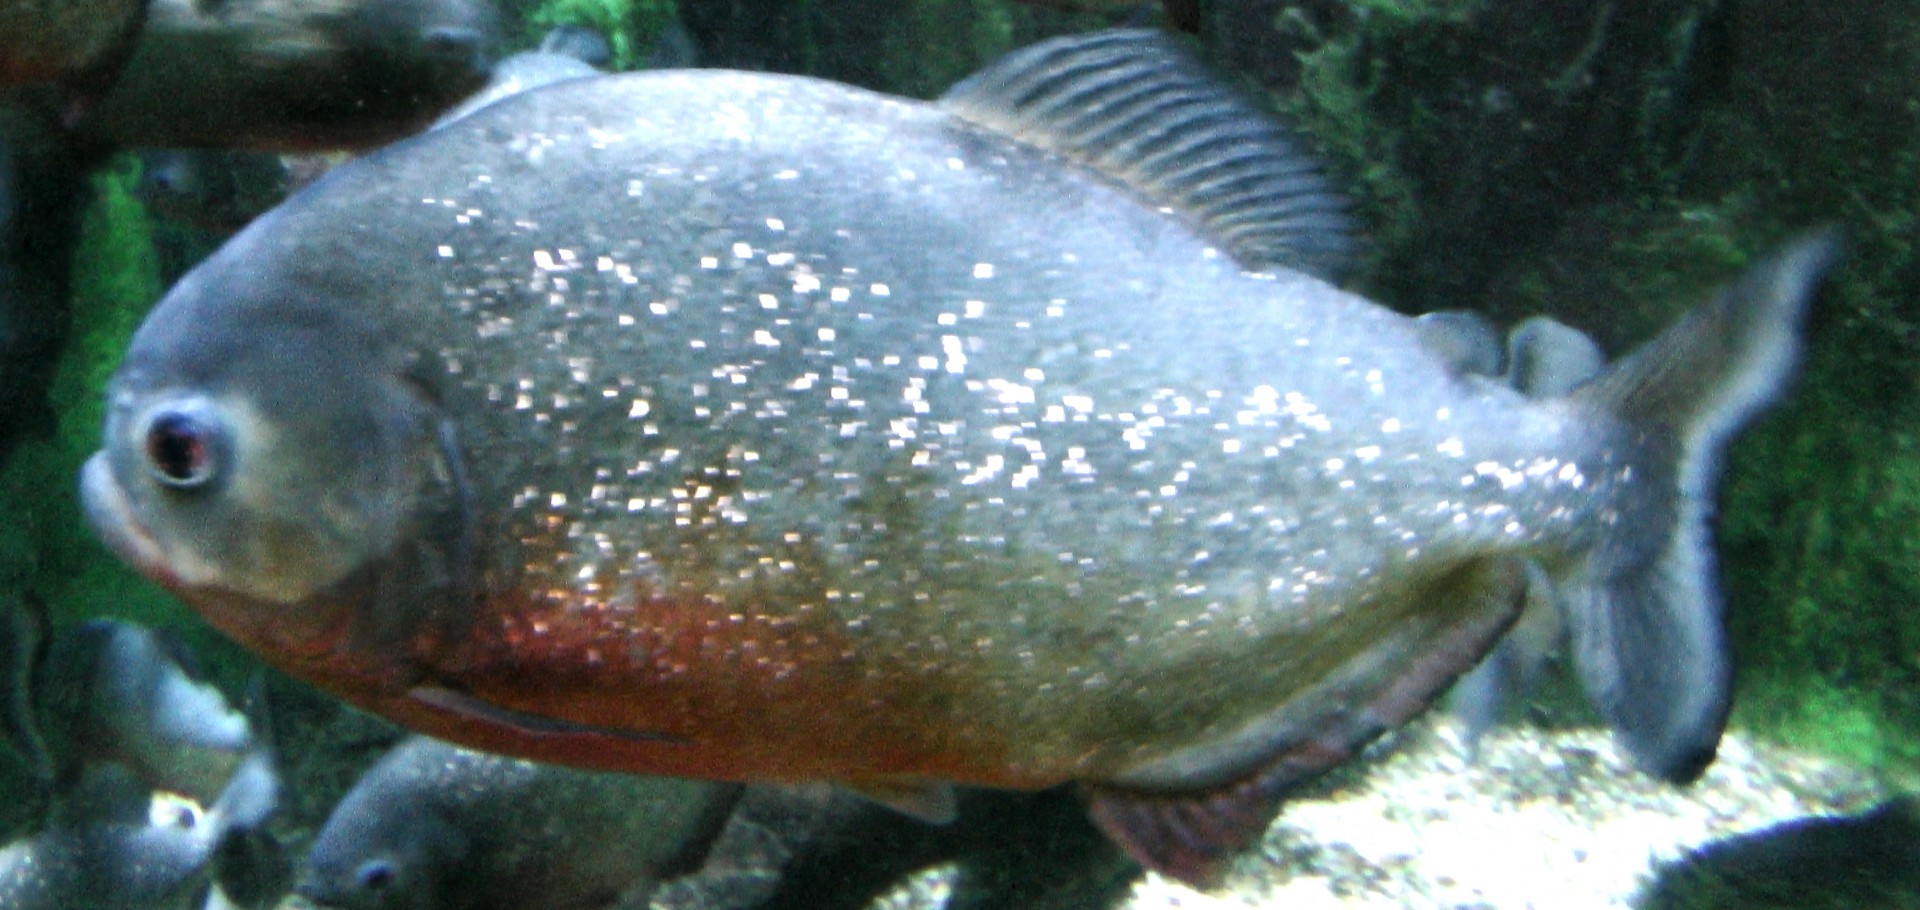 Red Belly Piranha